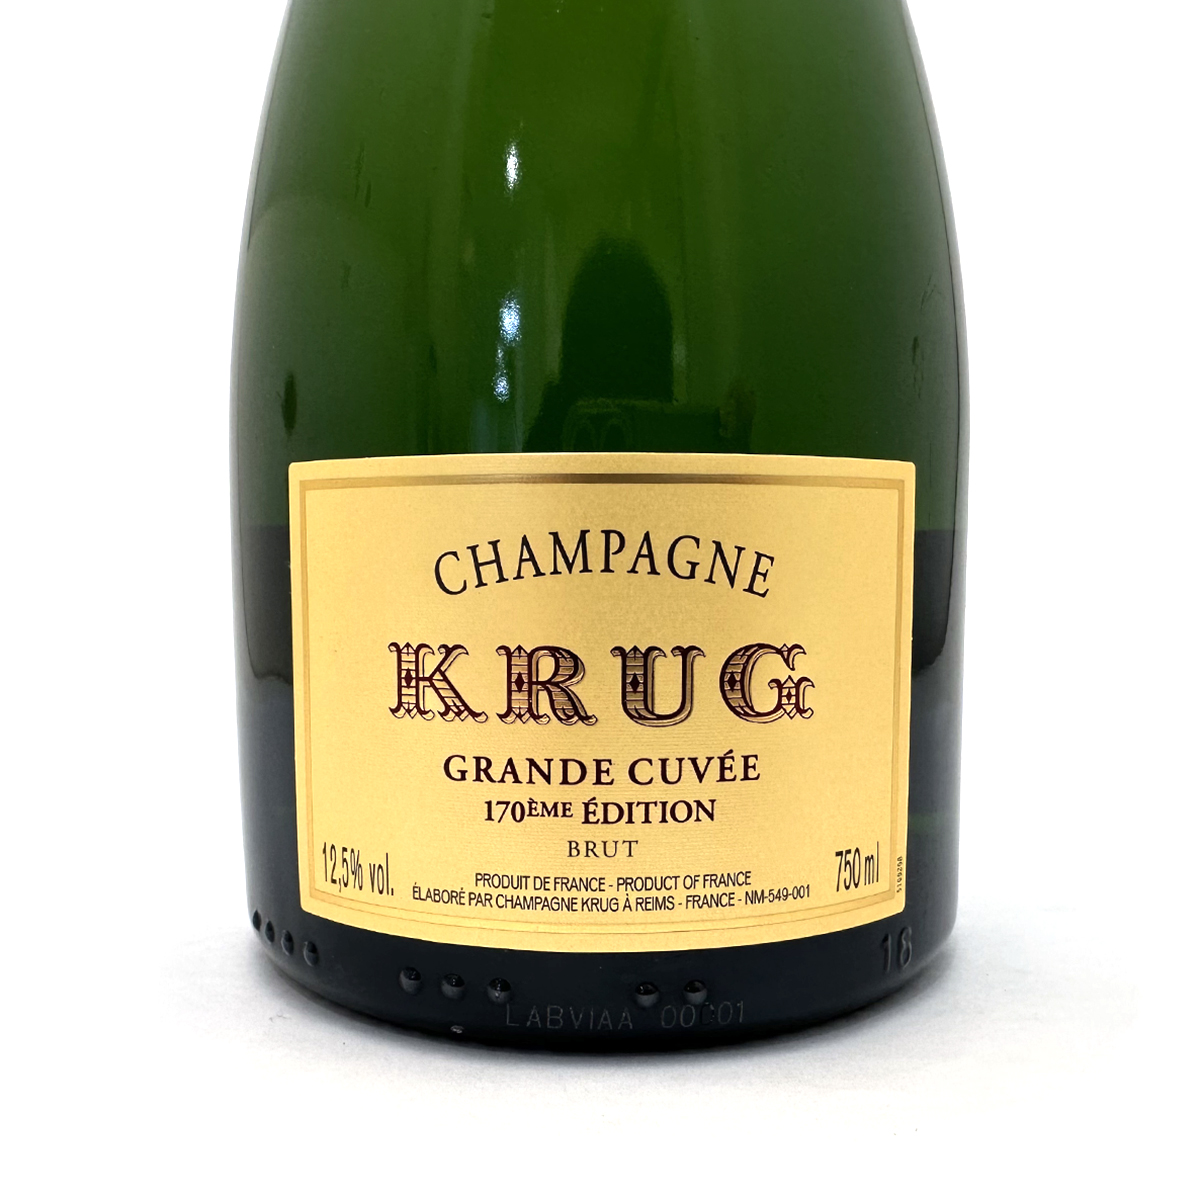 クリュッグ グラン キュヴェ(KRUG GRANDE CUVEE)170EME EDITION ブリュット シャンパン 750ml 12.5度